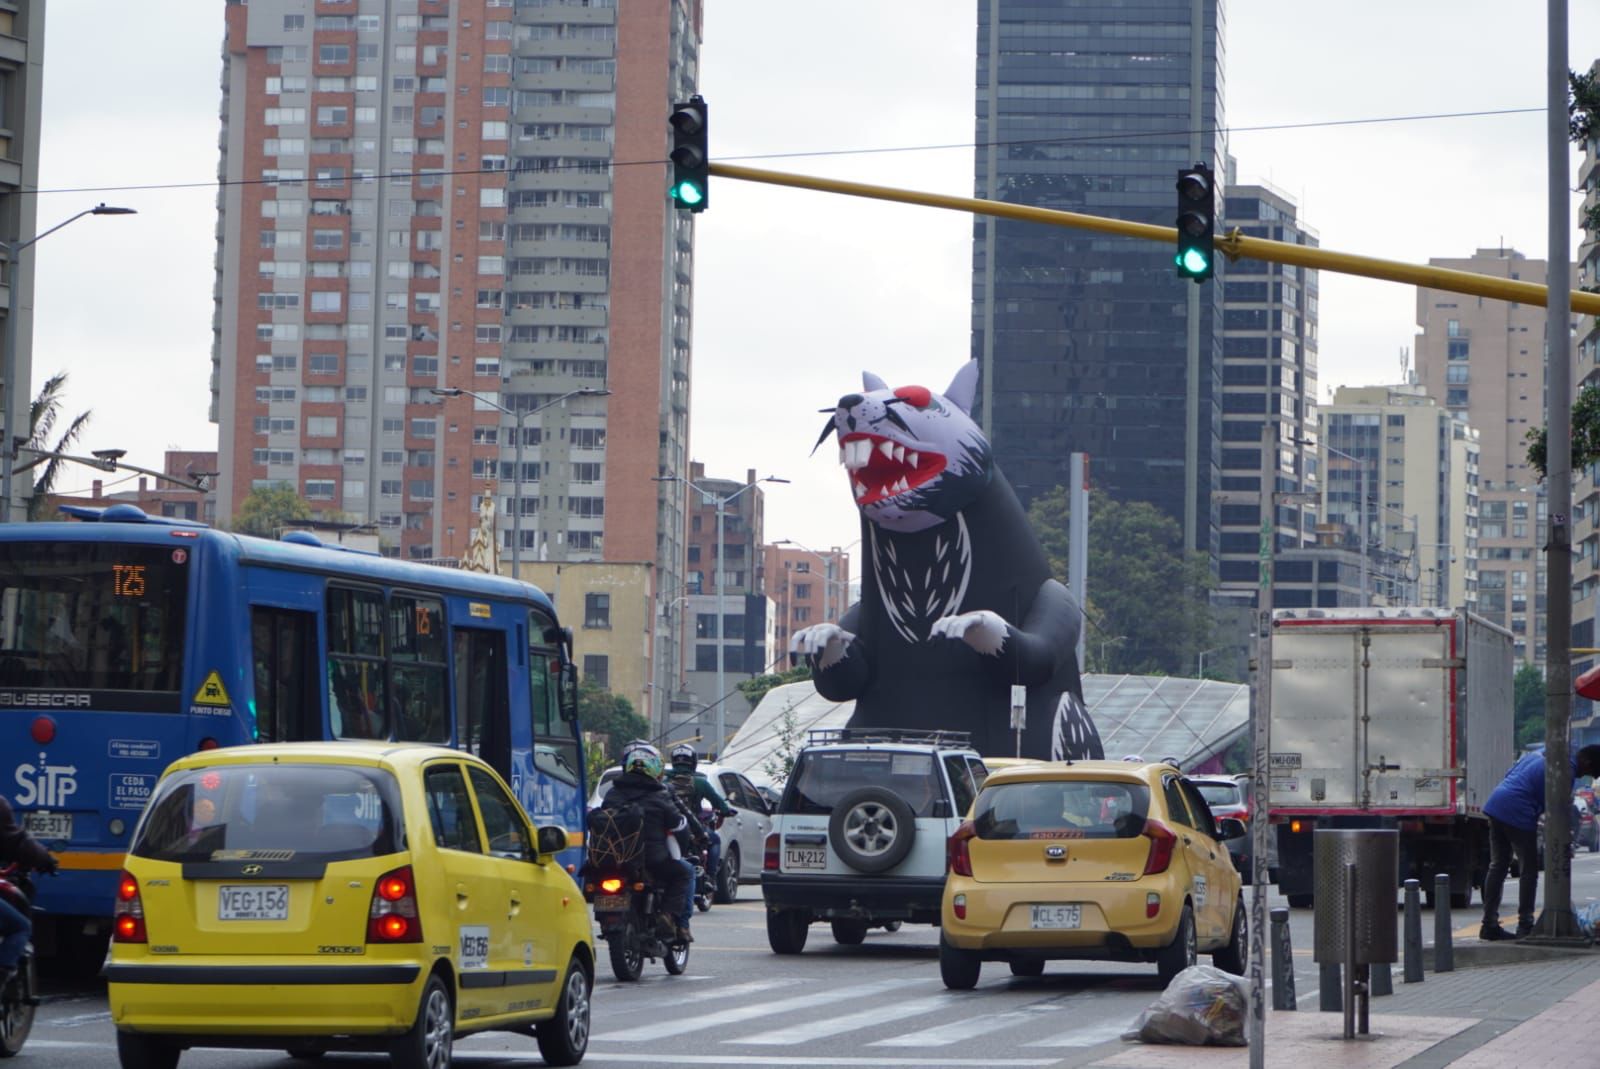 Rata gigante en el centro de Bogotá (+ video)